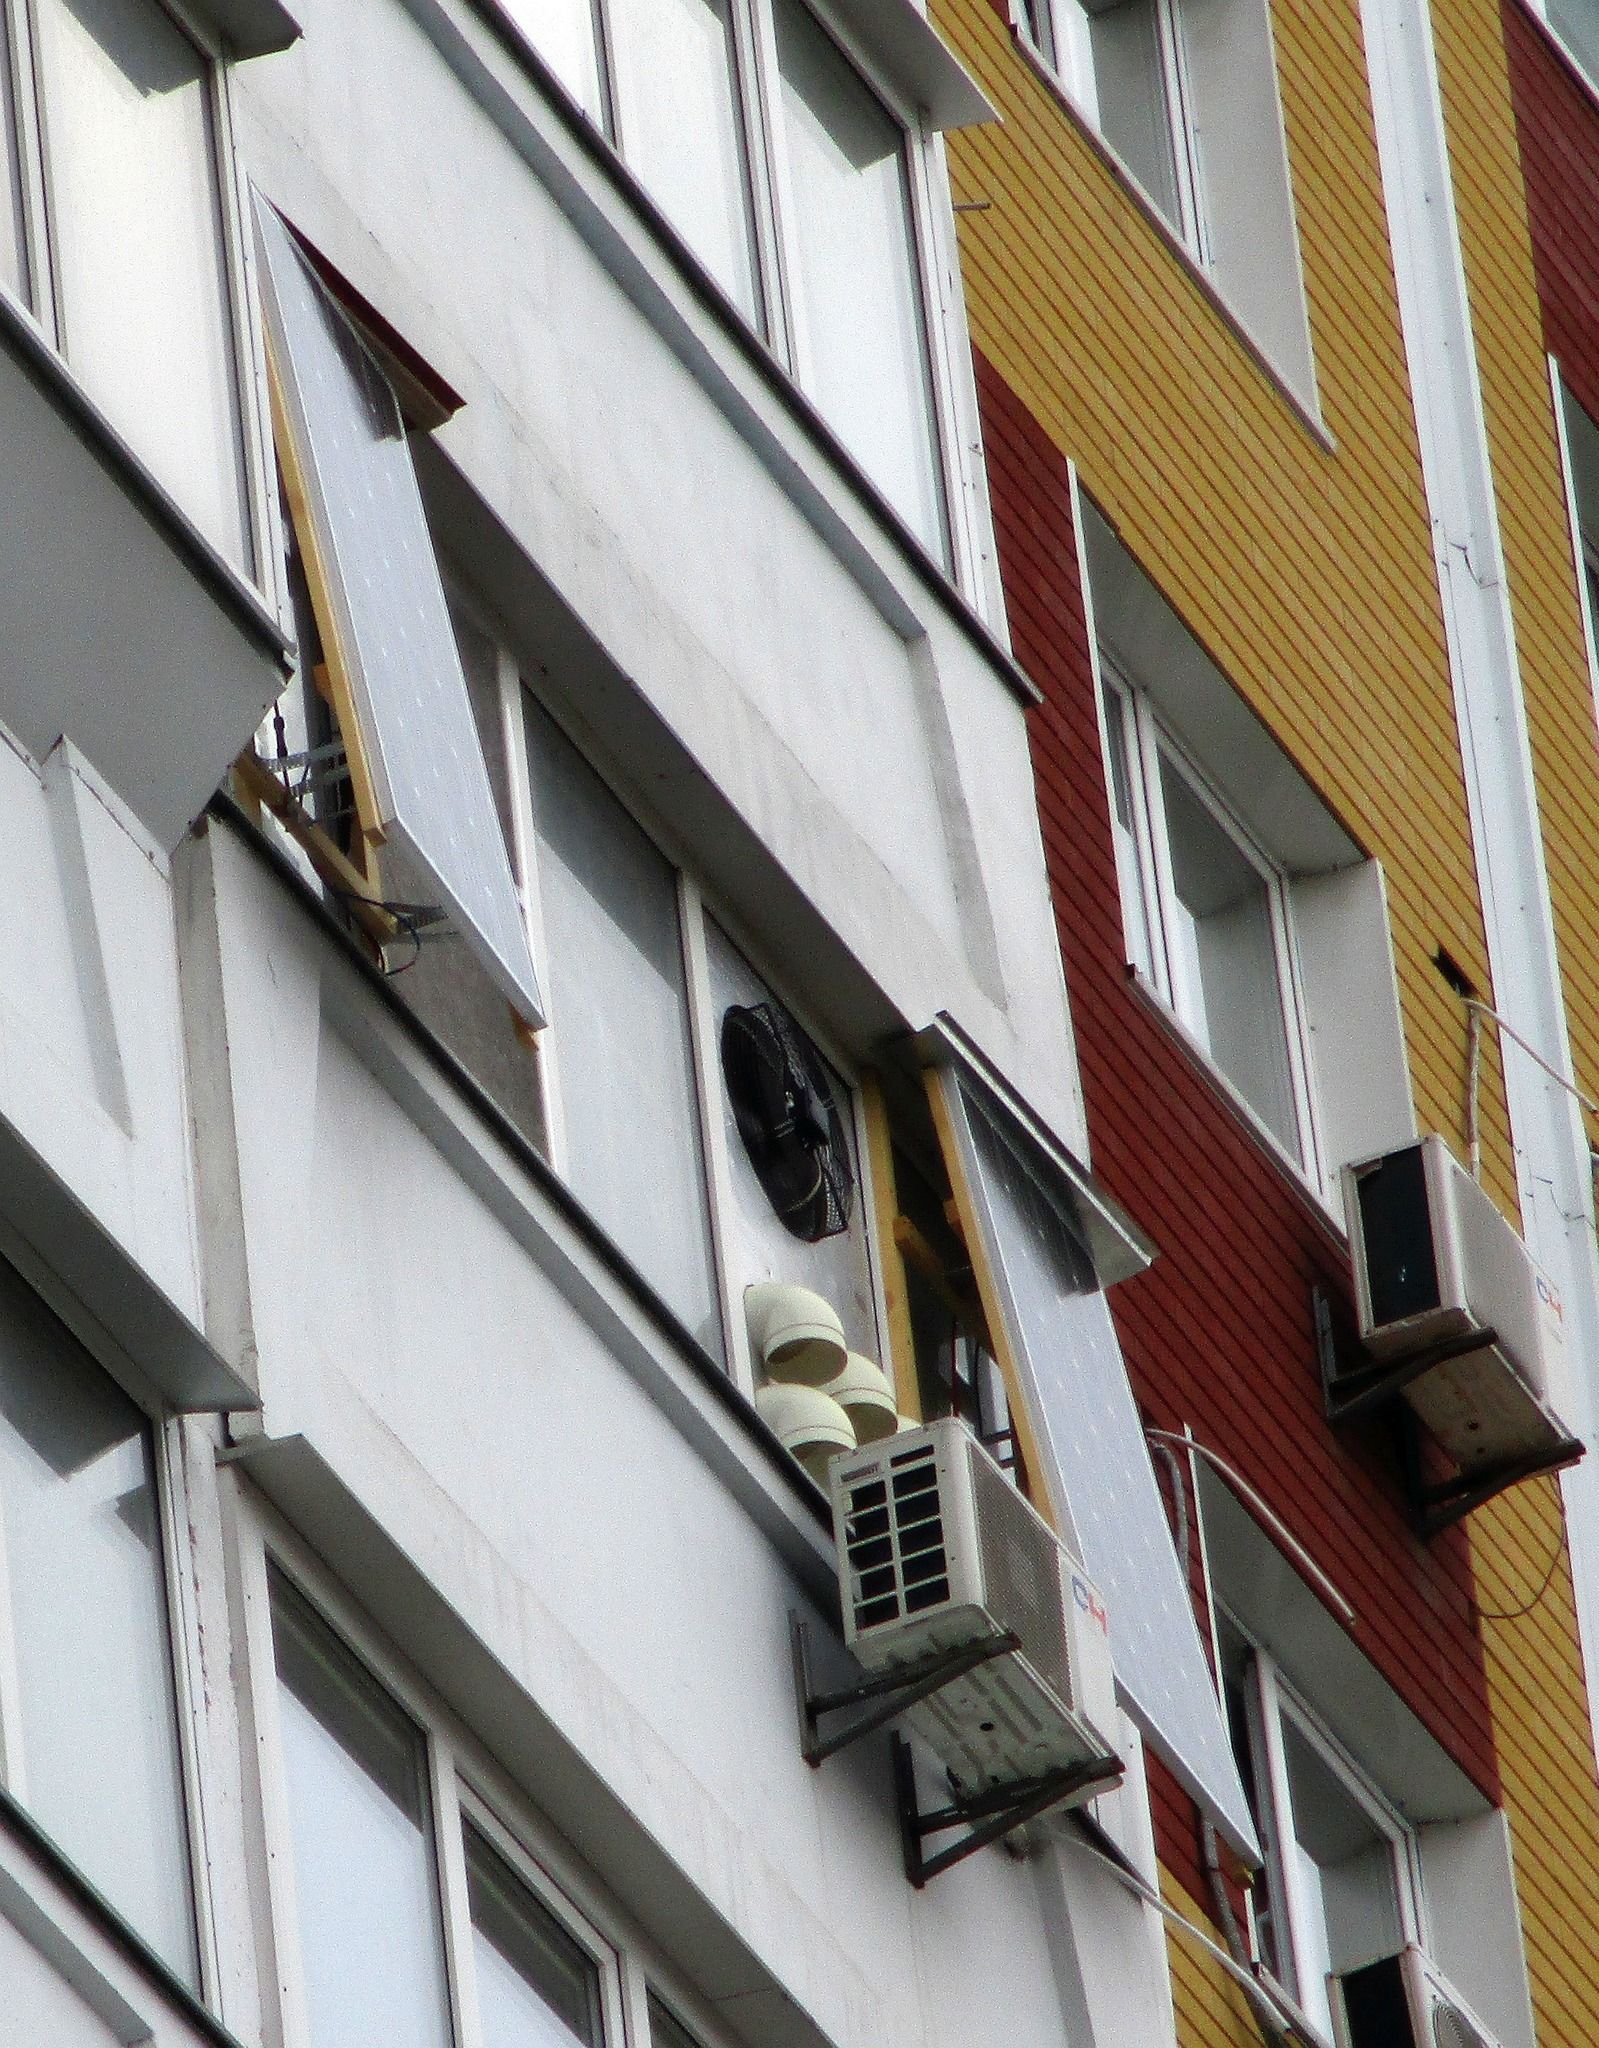 Але з балкона квартири, ще від осені лунає дивний шум, що дратує сусідів.